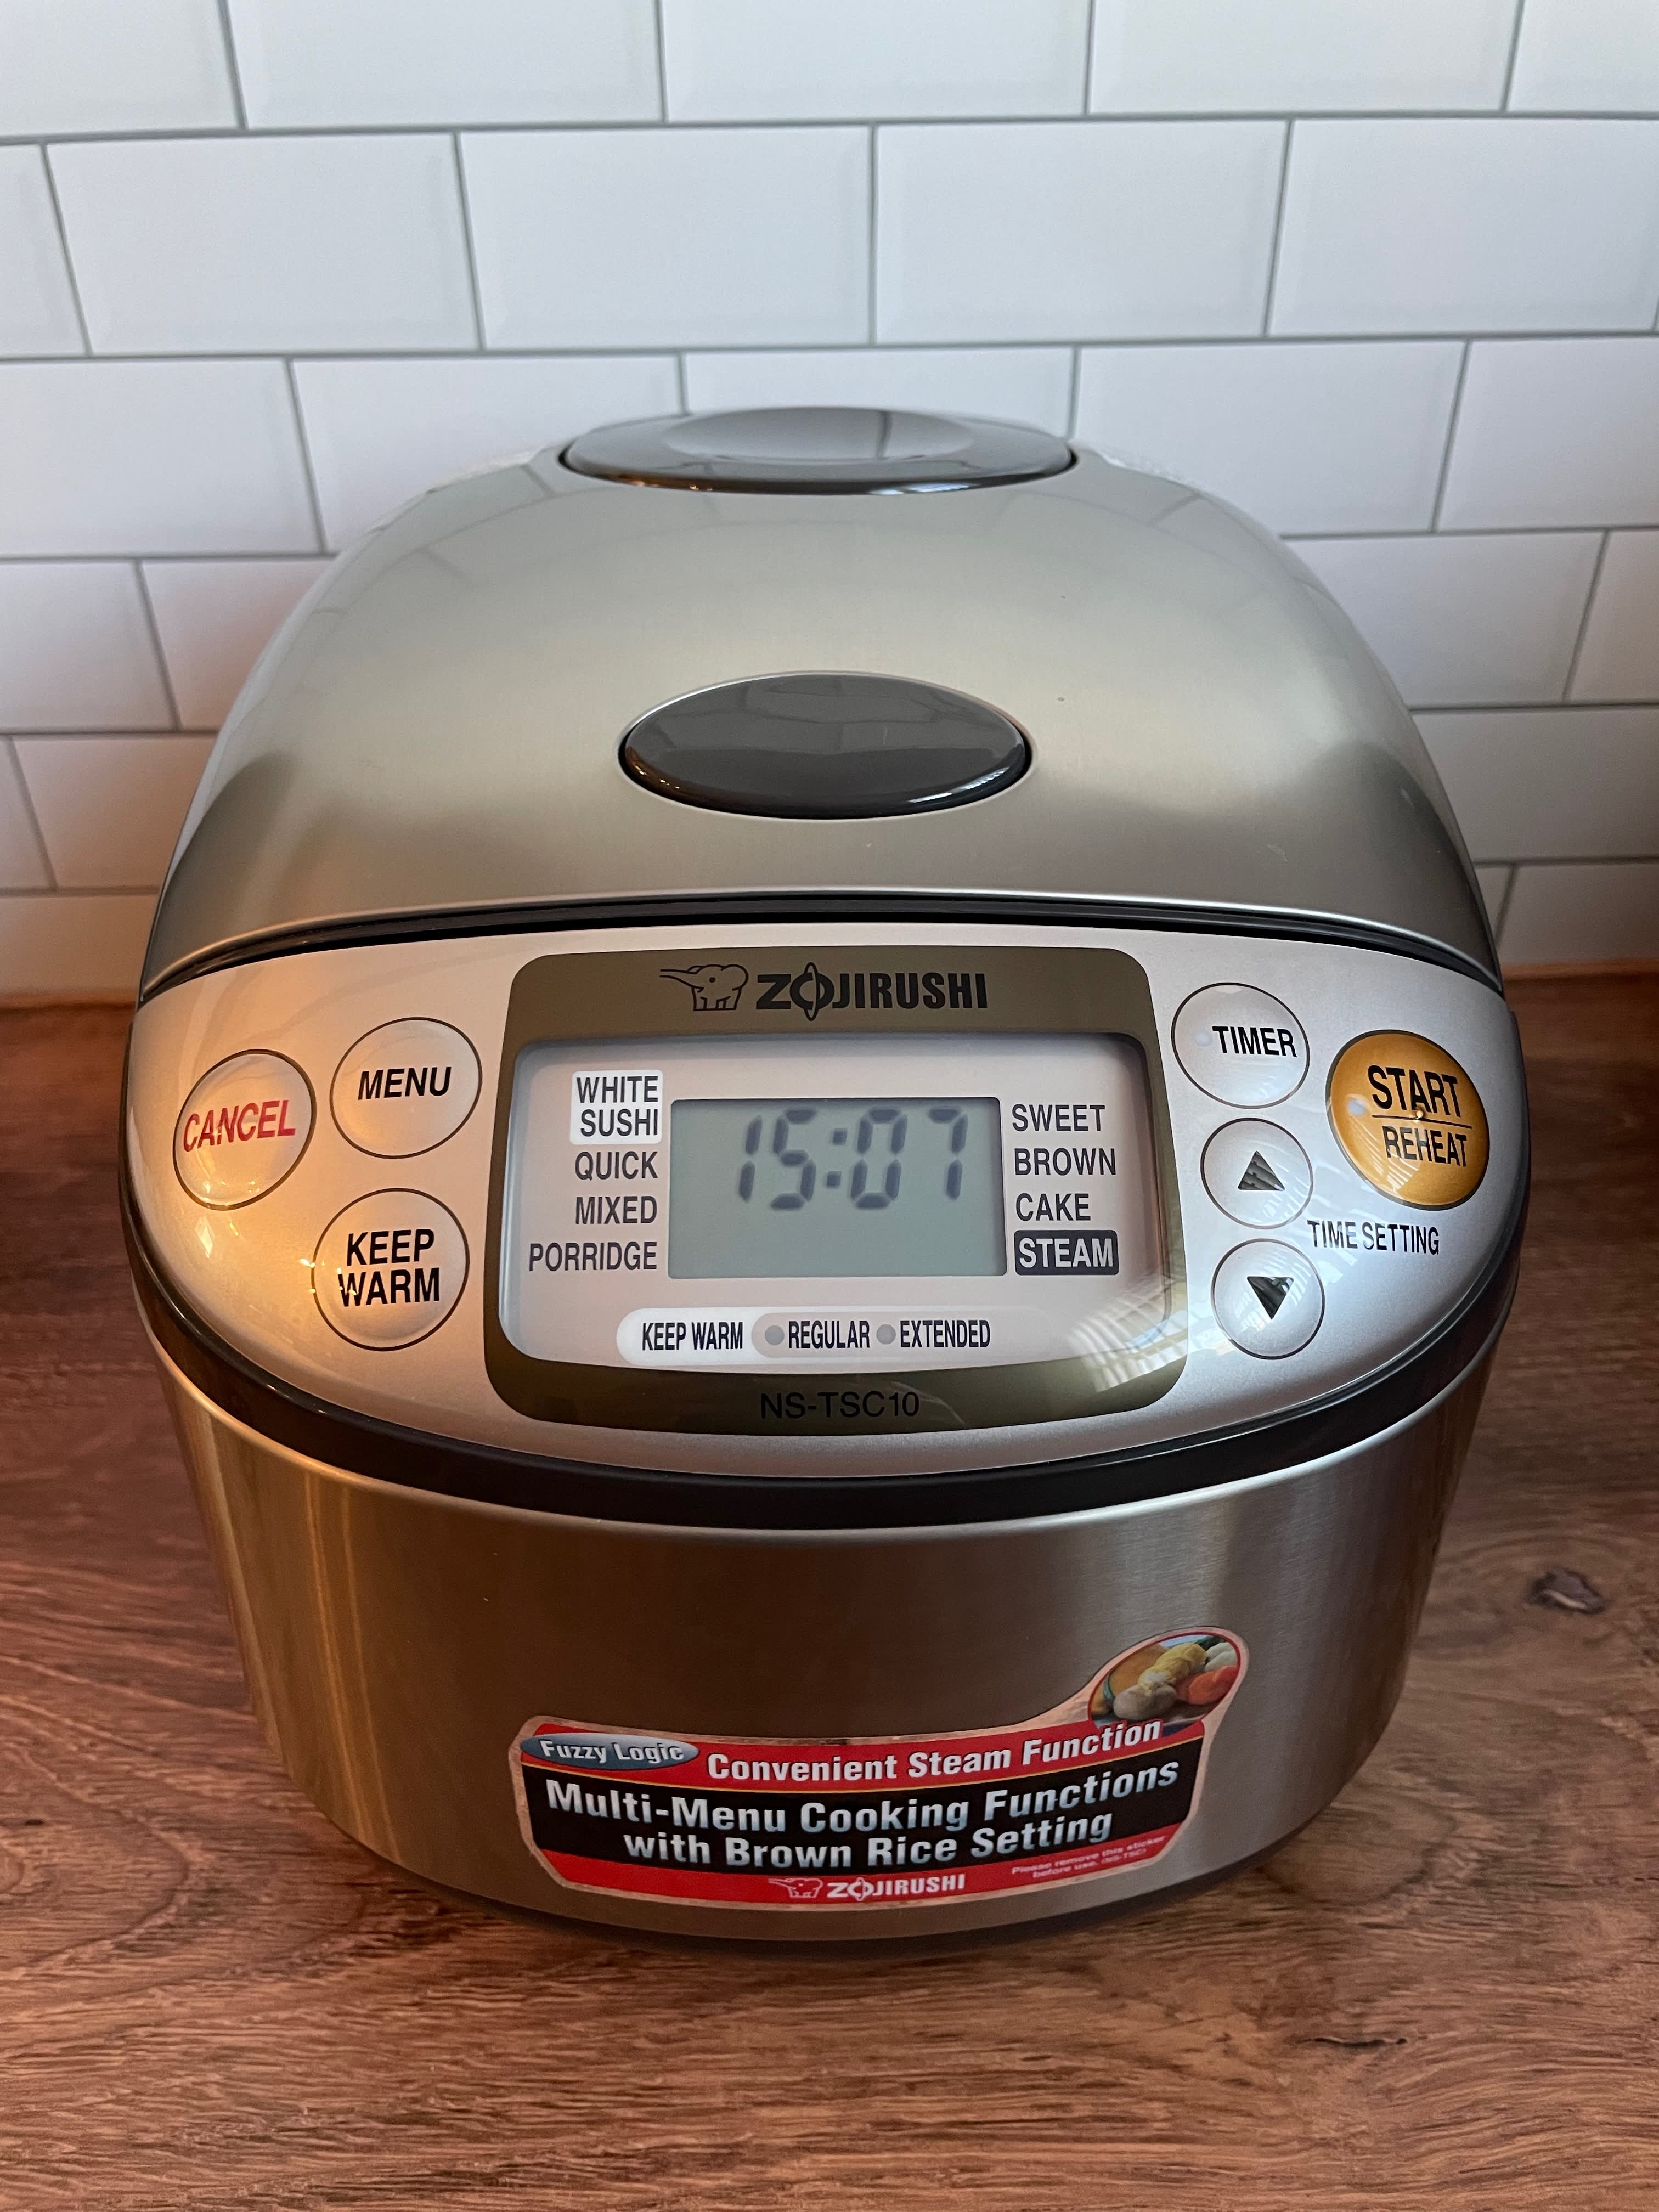 Review: Testing the New Nutribullet EveryGrain Cooker - InsideHook